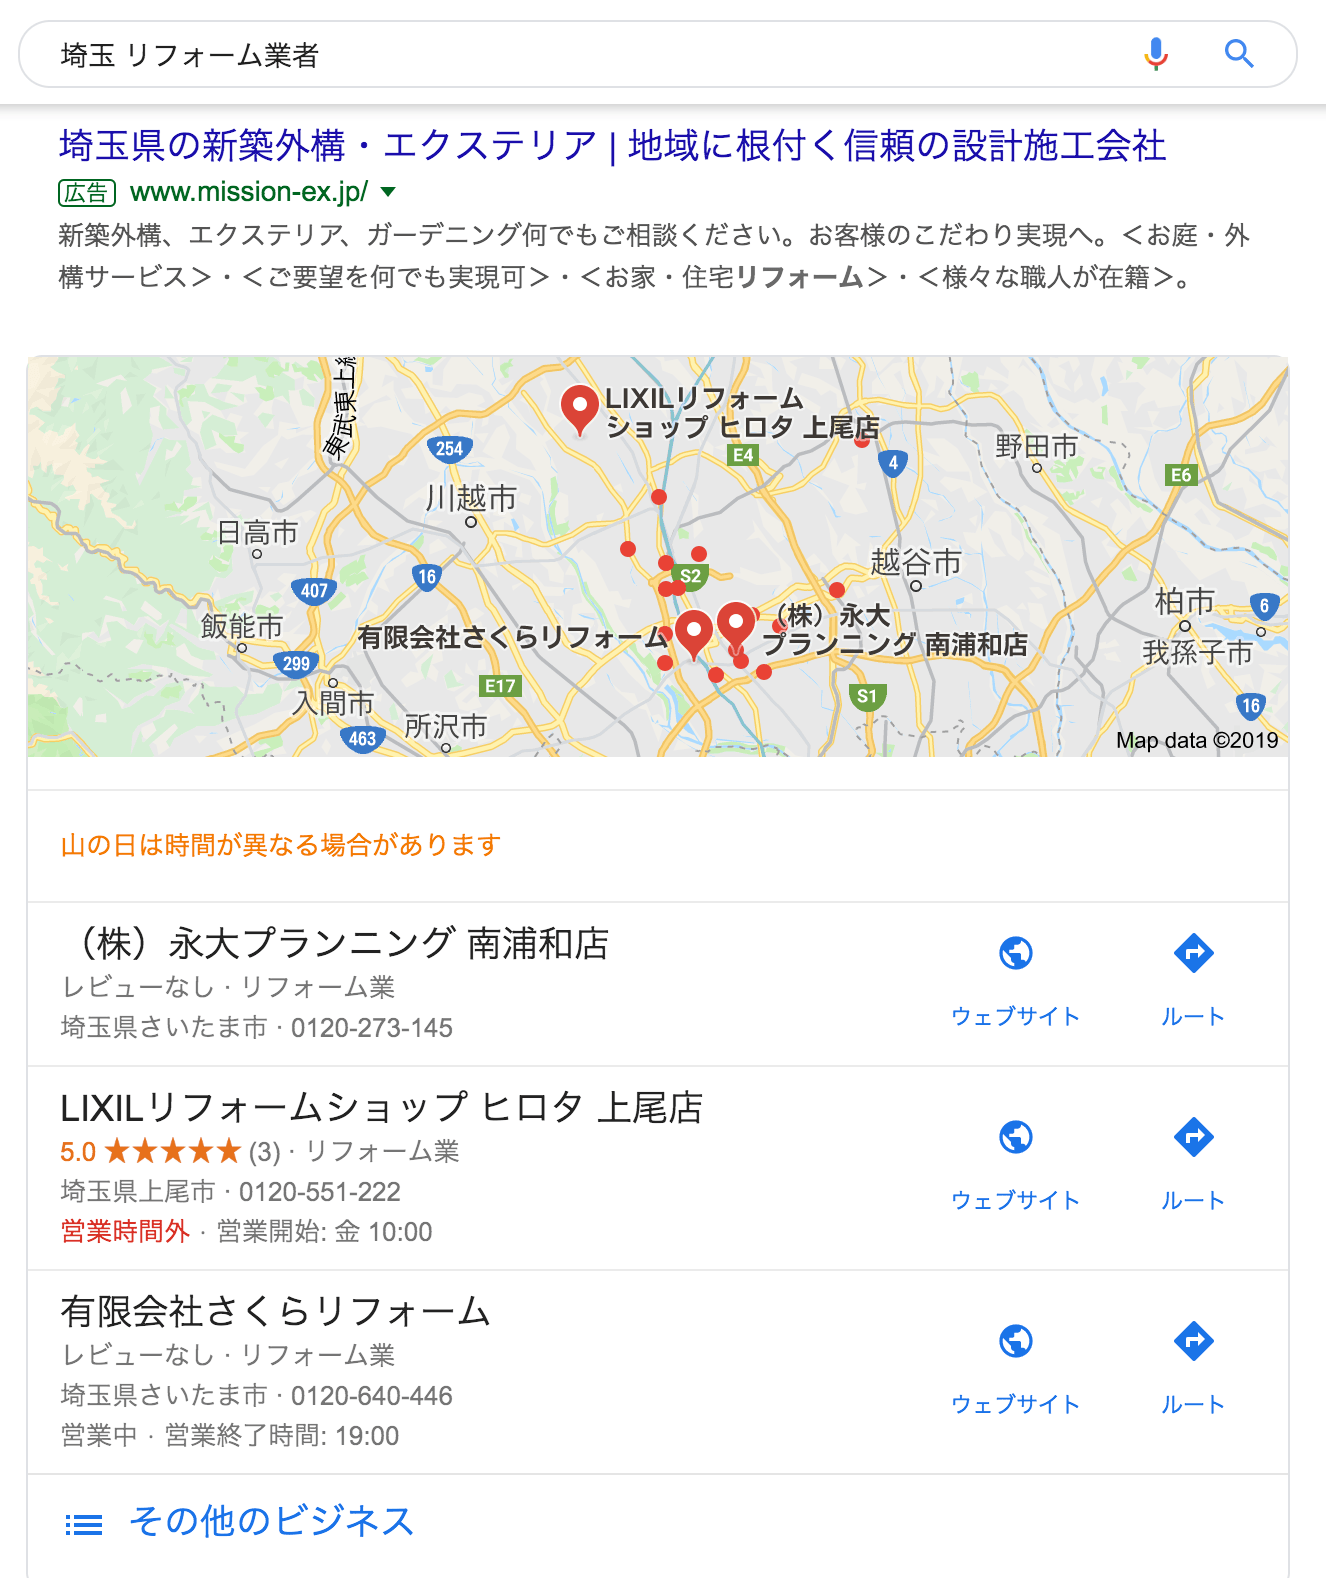 埼玉 リフォーム業者 マップ